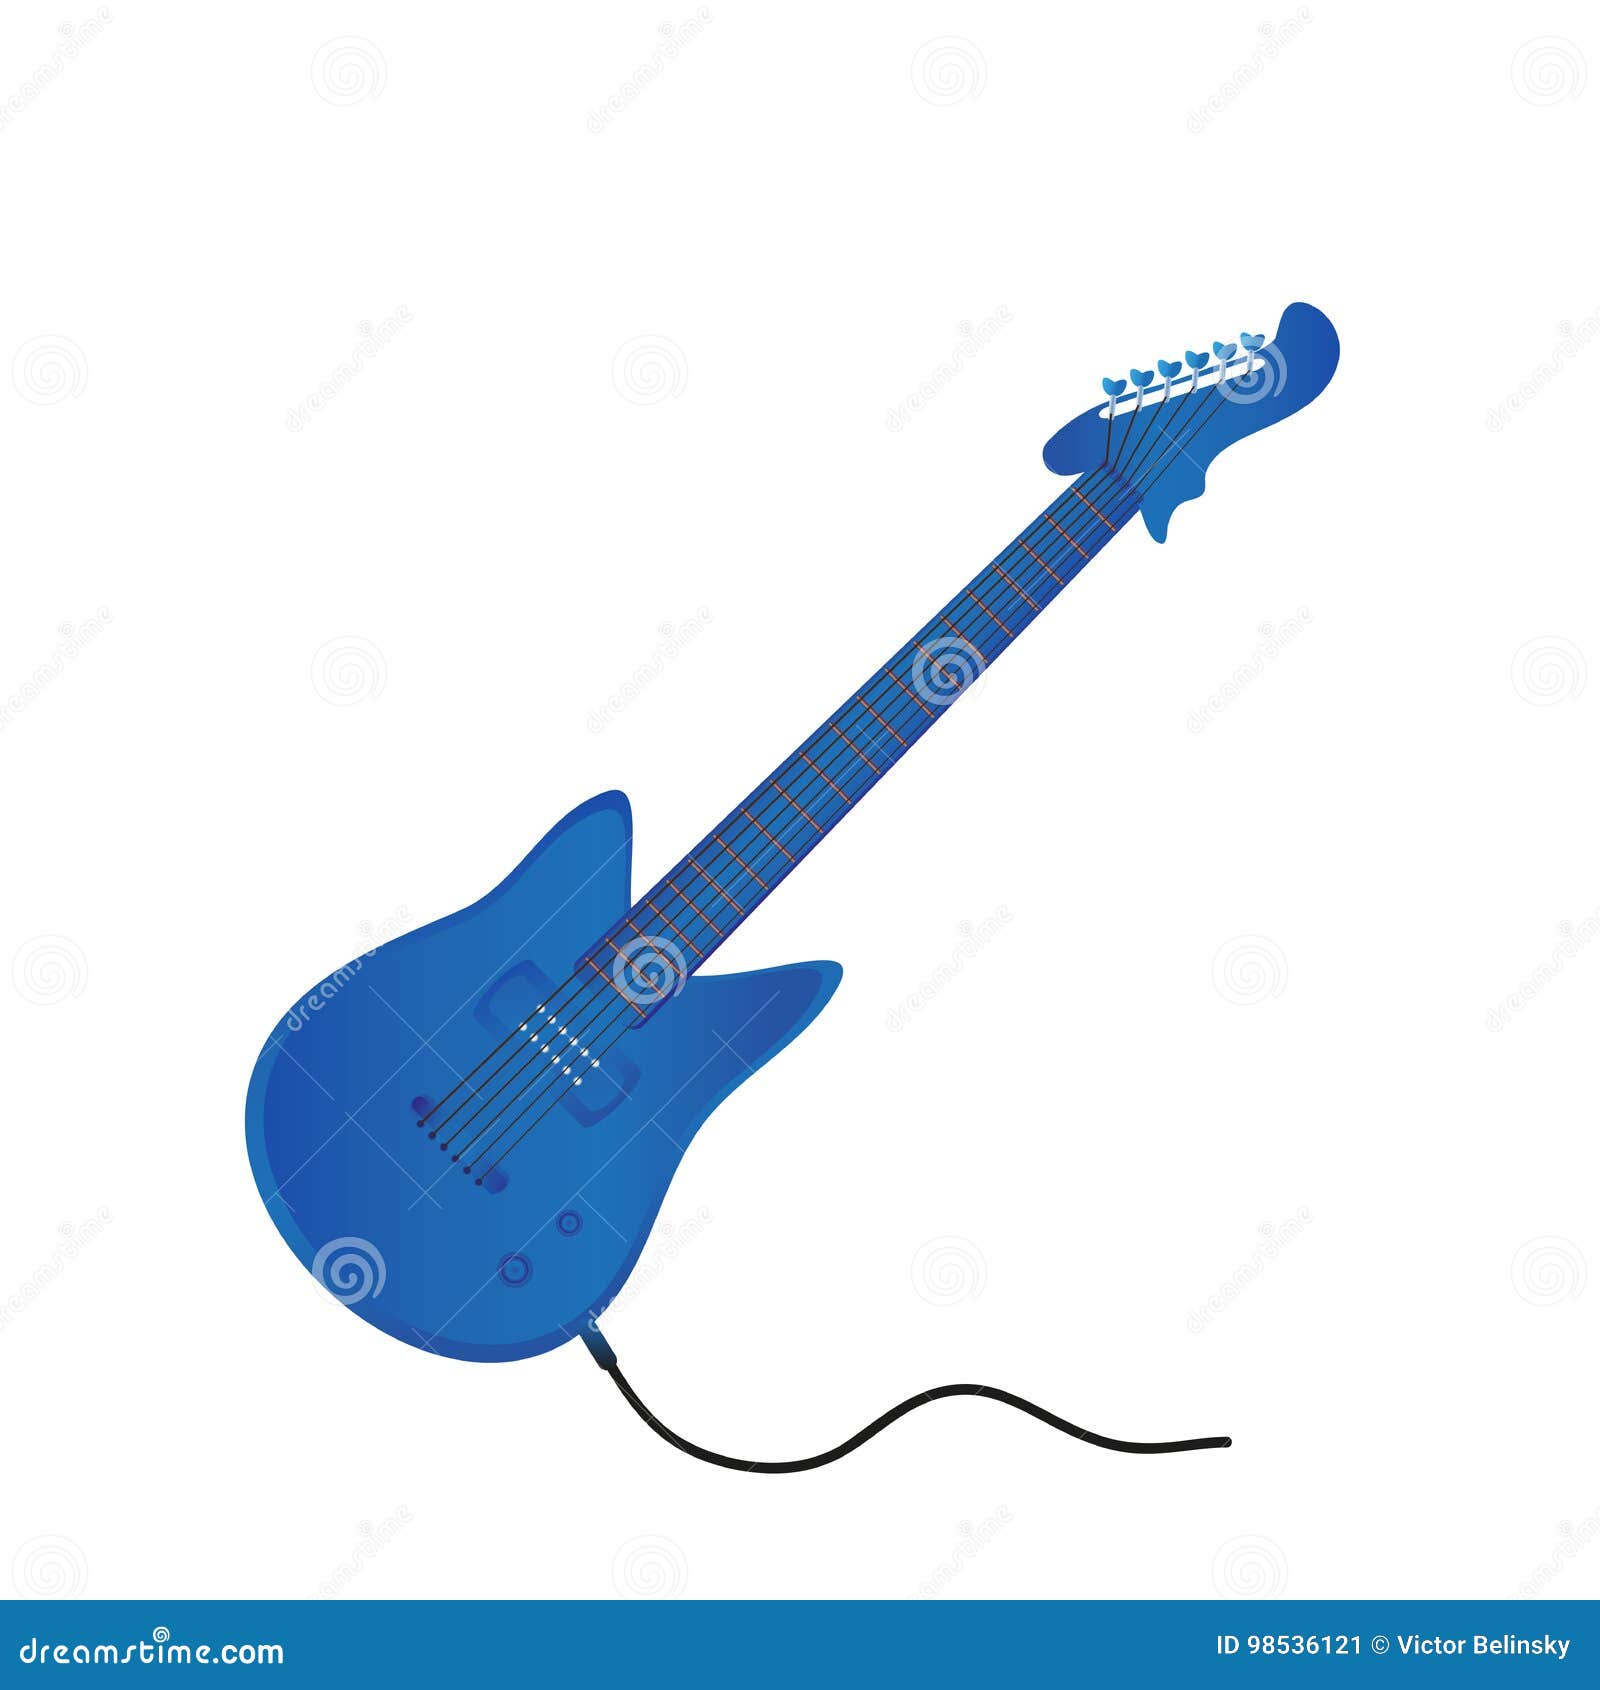 Bạn là một người yêu nhạc và muốn có một ảnh chân dung với chiếc đàn Guitar điện màu xanh yêu thích? Đừng ngần ngại, hãy xem hình ảnh với một chiếc đàn Guitar điện màu xanh trên nền trắng và cảm nhận sự chuyên nghiệp và tinh tế của bức ảnh.